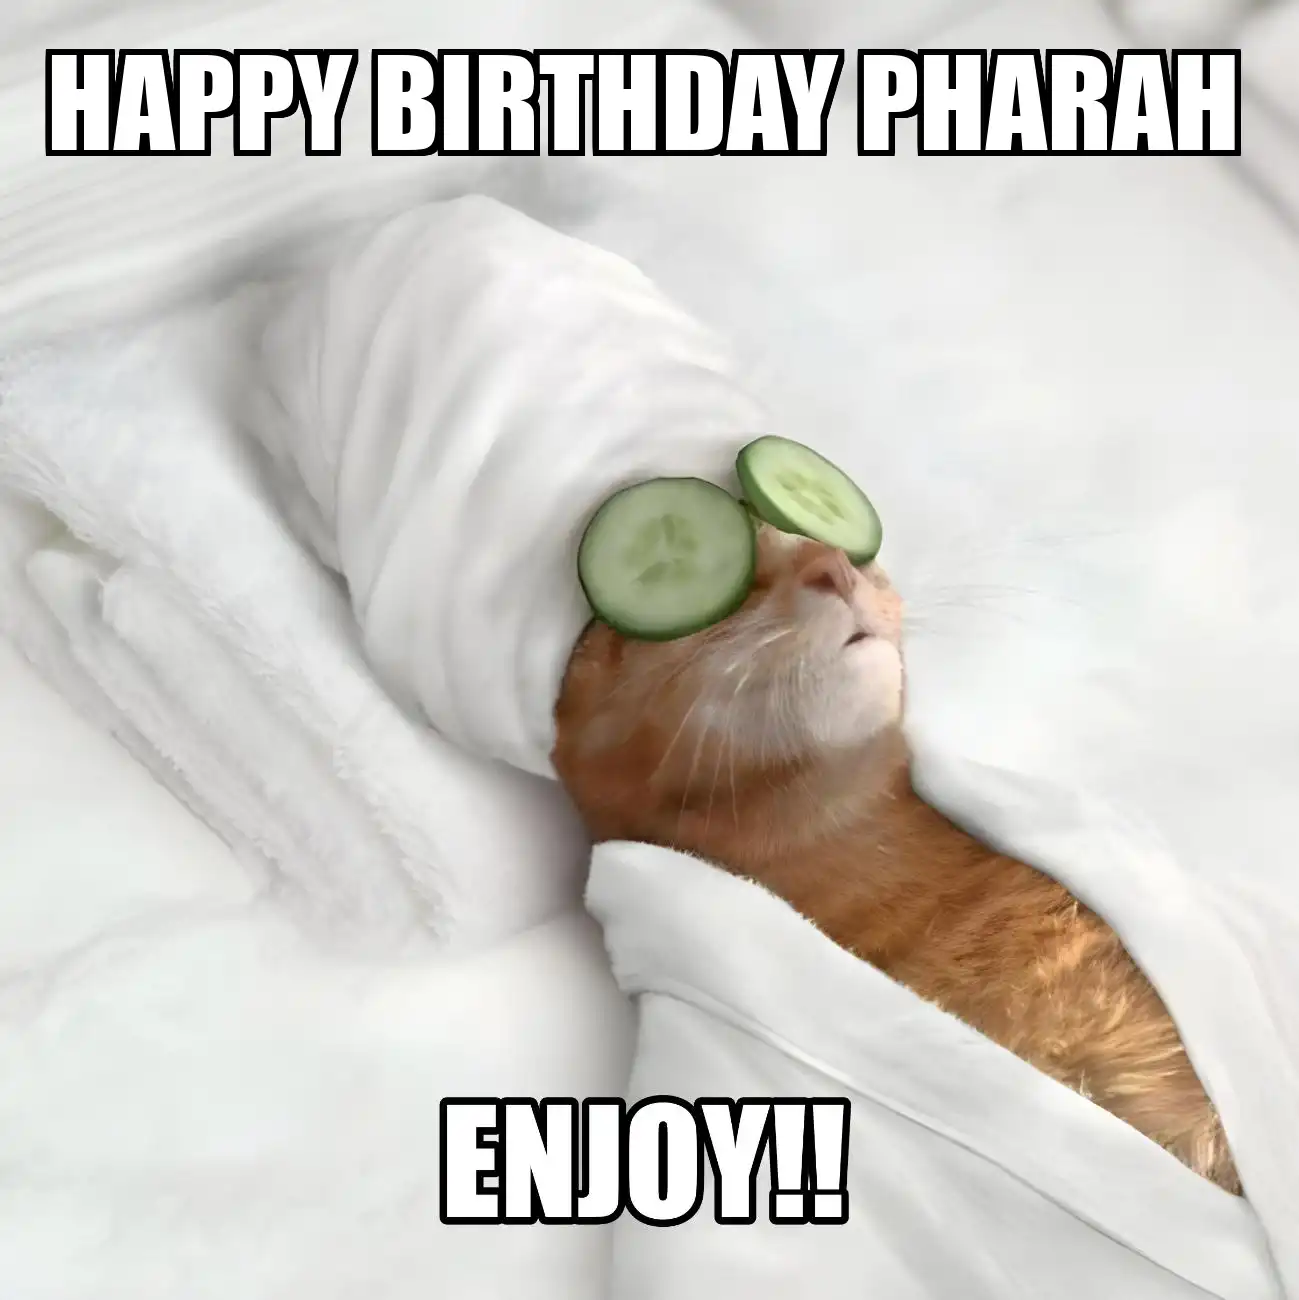 Happy Birthday Pharah Enjoy Cat Meme